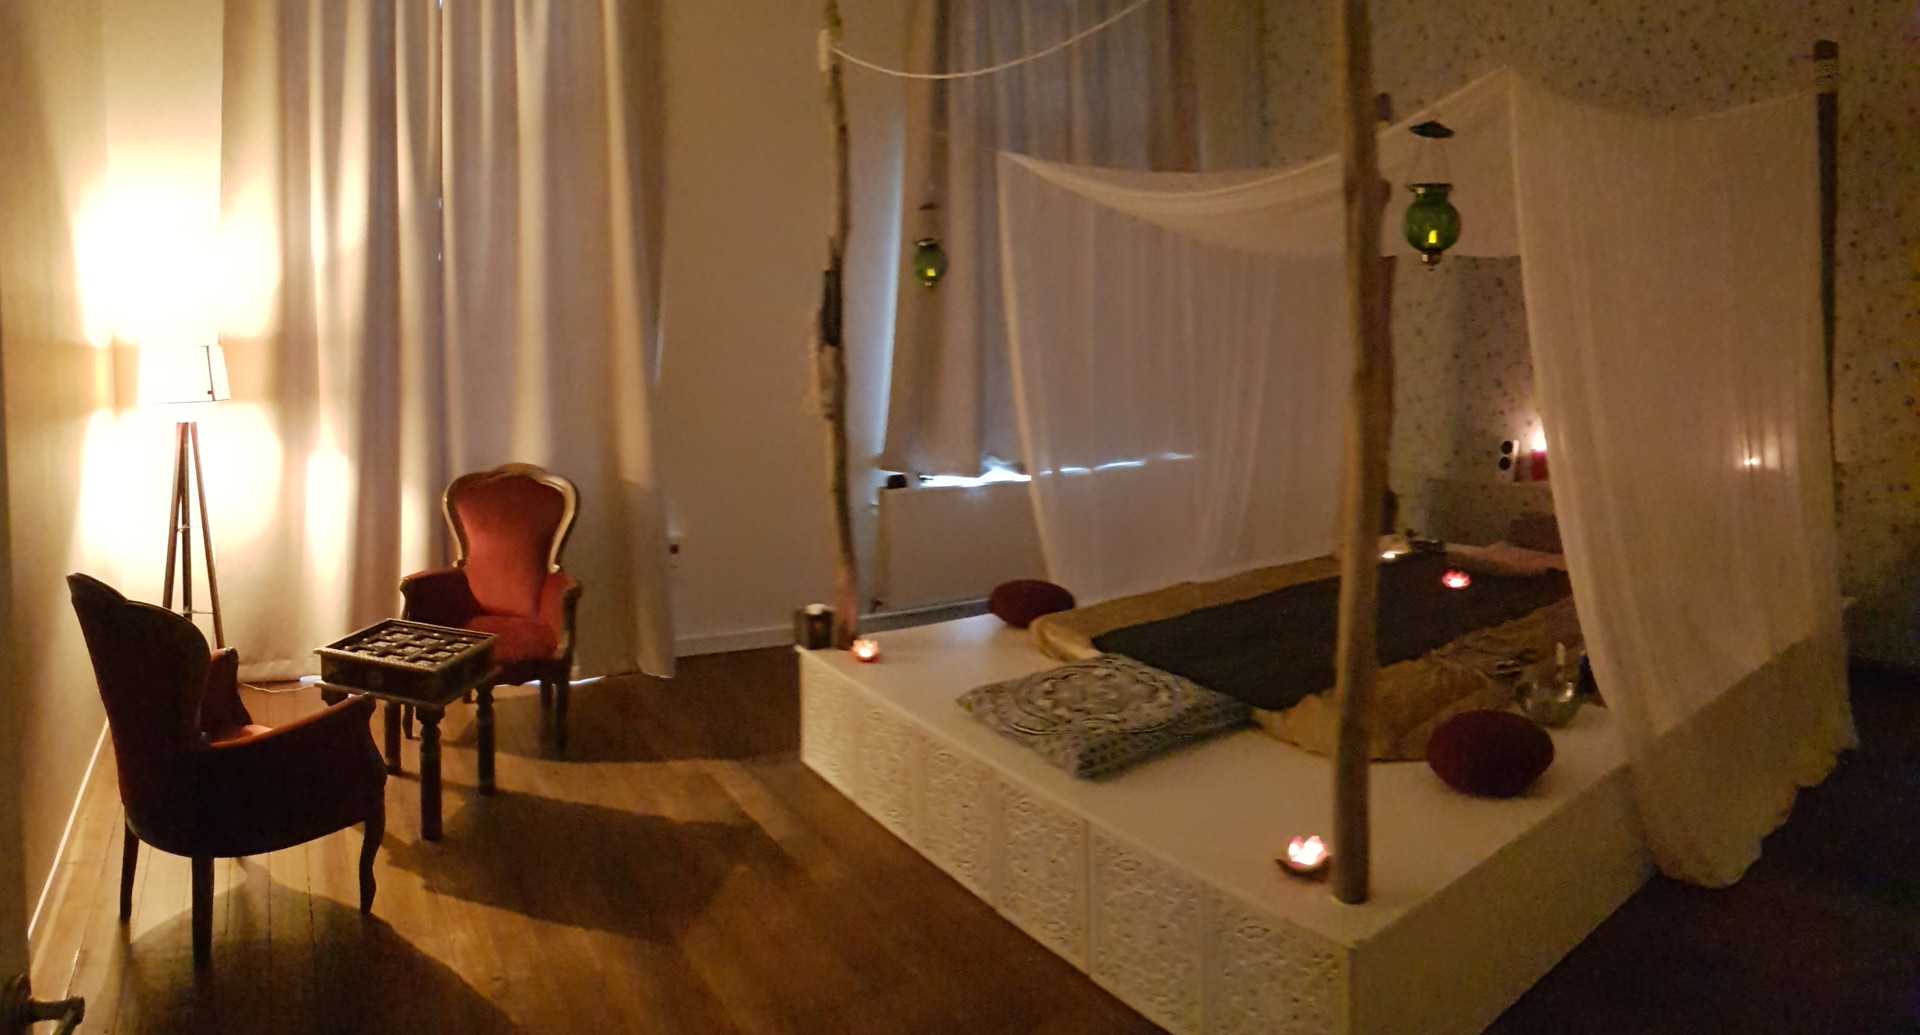 La voie du plaisir ouvre sa nouvelle salle de massage tantrique en Belgique